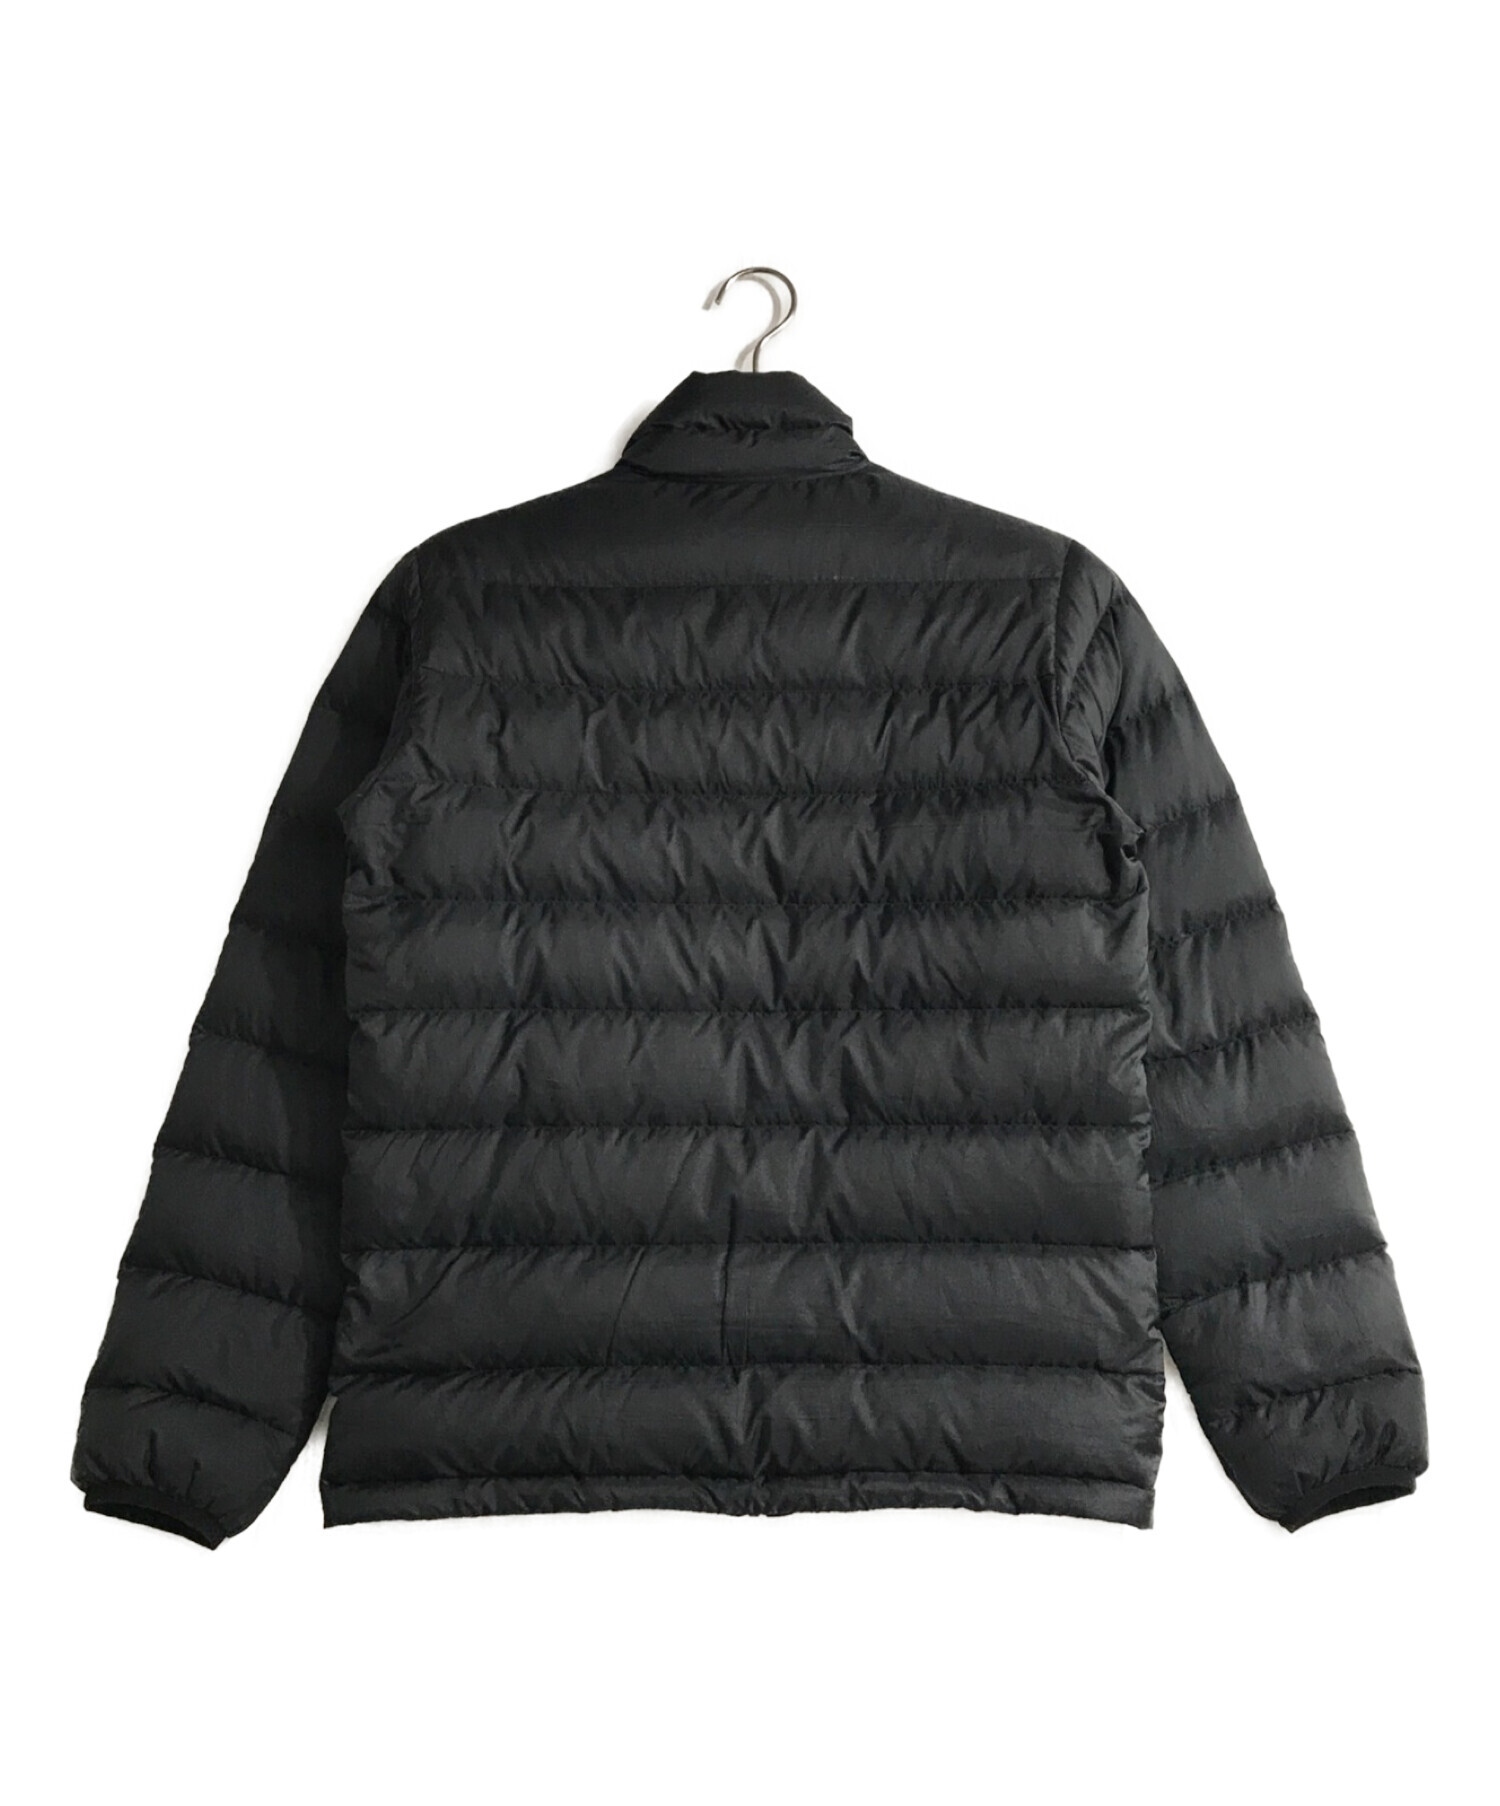 Patagonia (パタゴニア) ダウンジャケット ブラック サイズ:XS